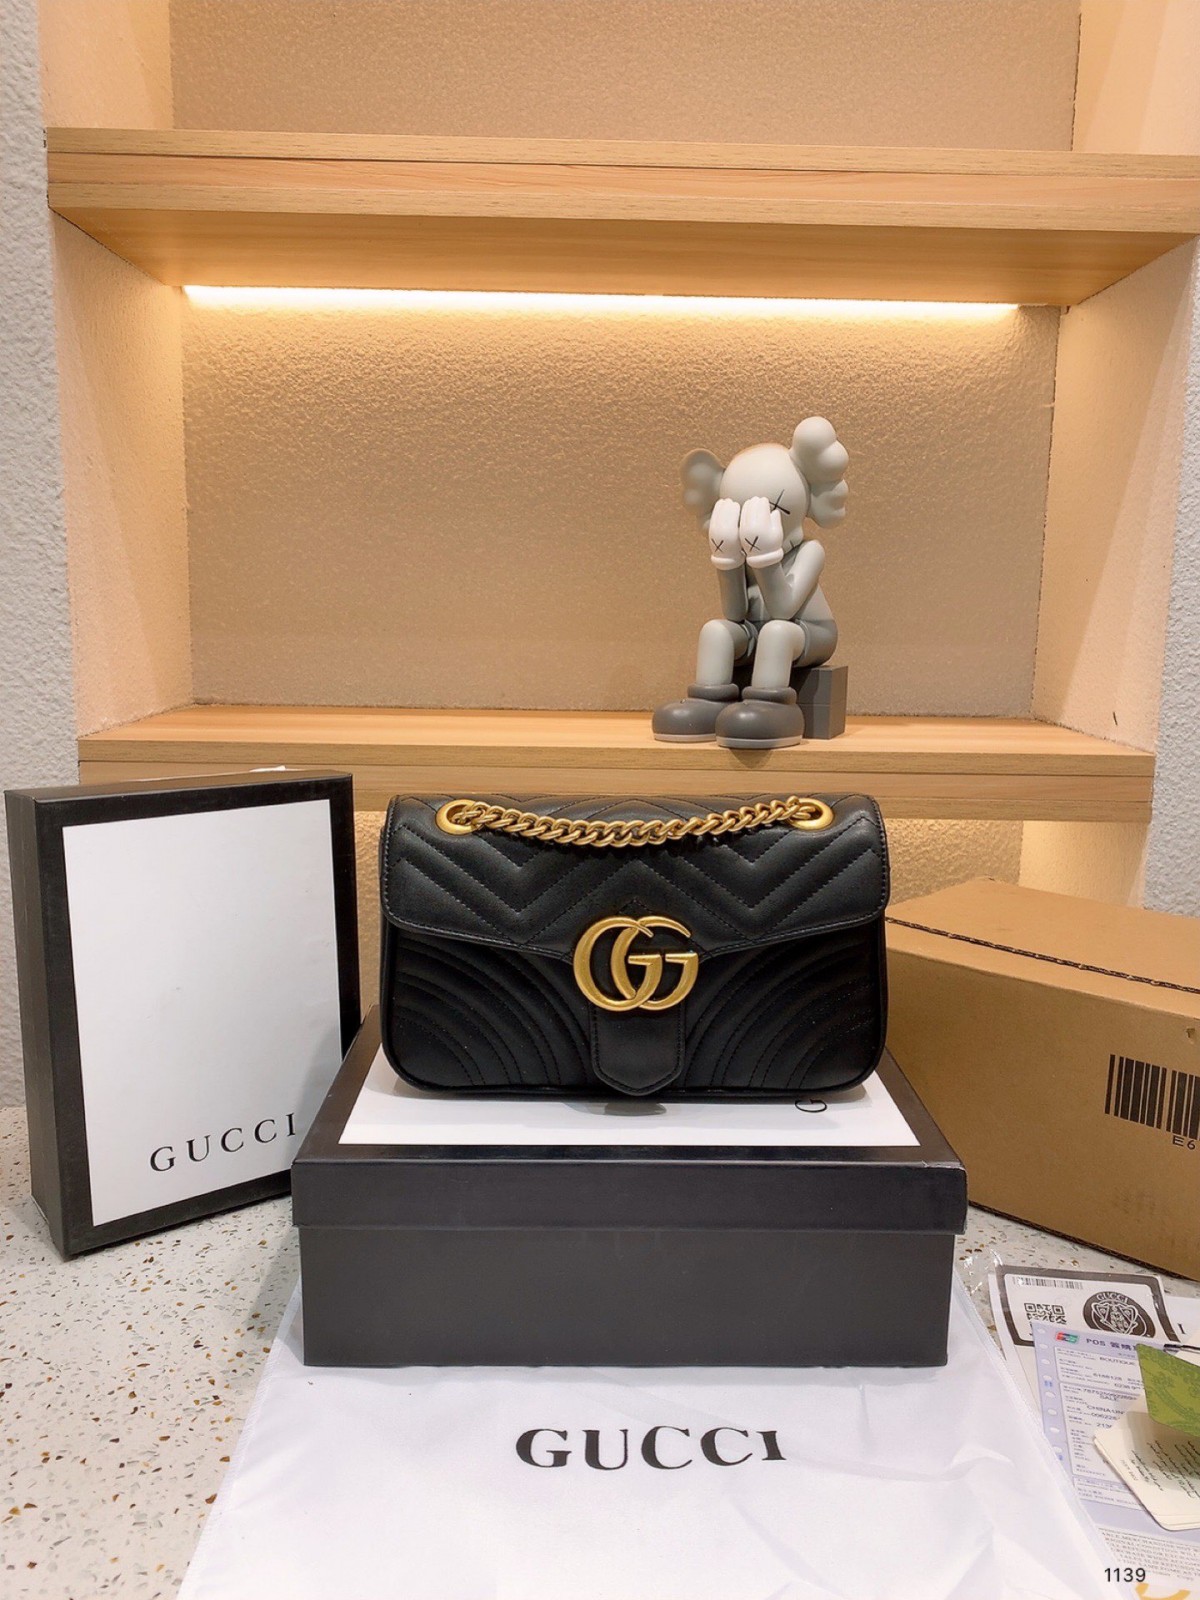 Firwat GUCCI GG Marmont Bag Gets the Girls (2022 Special) - Bescht Qualitéit Fake Louis Vuitton Bag Online Store, Replica Designer Bag ru